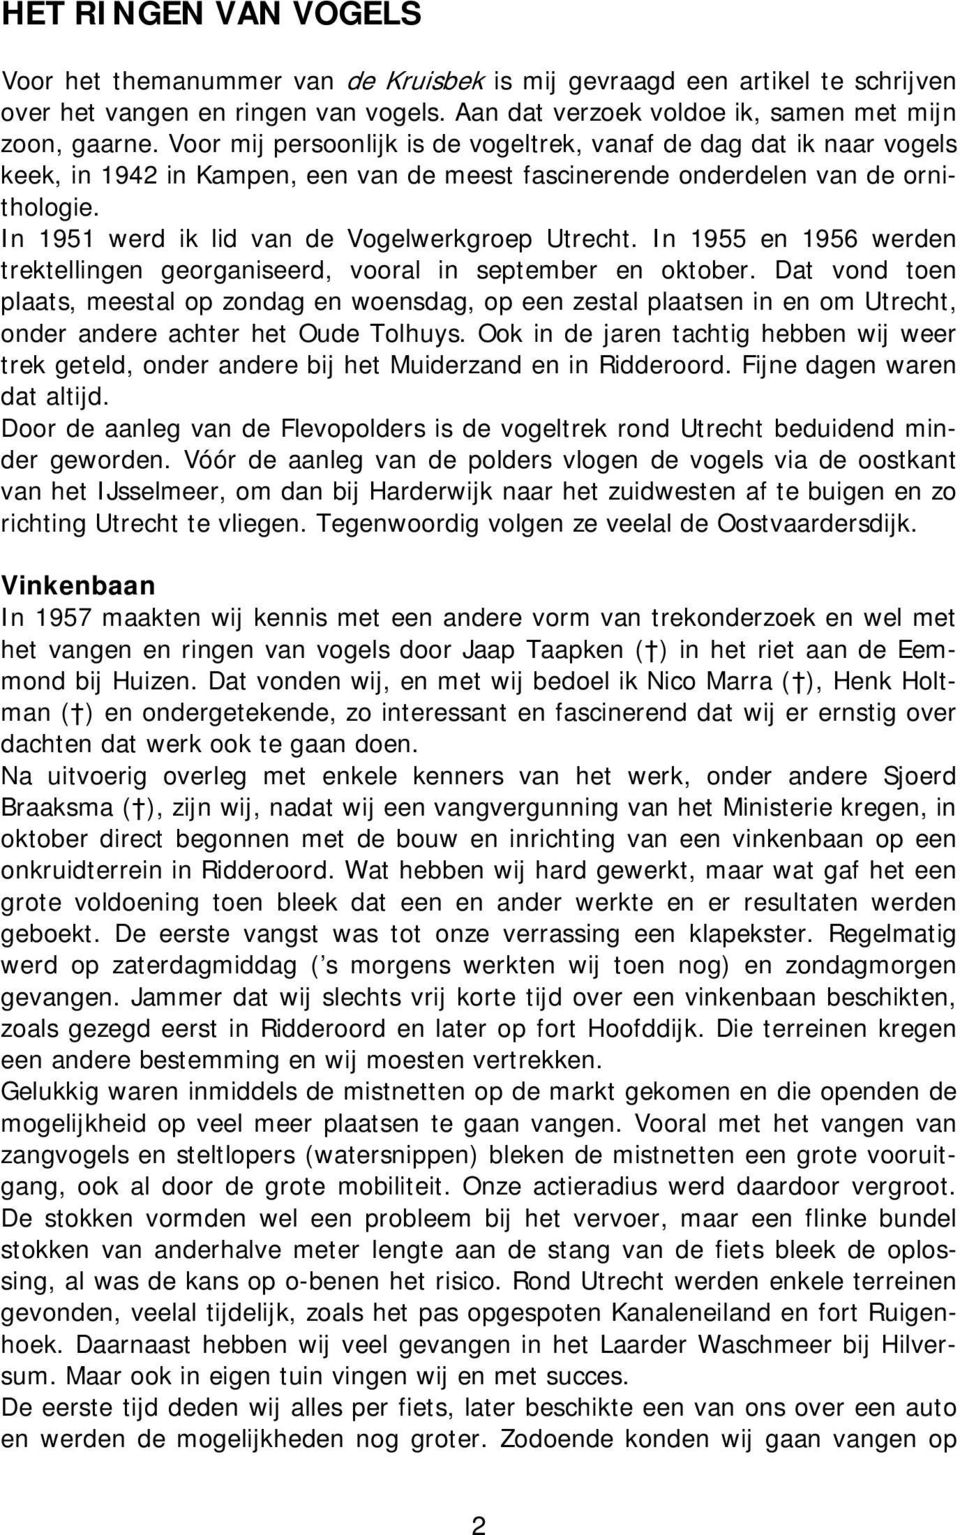 In 1951 werd ik lid van de Vogelwerkgroep Utrecht. In 1955 en 1956 werden trektellingen georganiseerd, vooral in september en oktober.